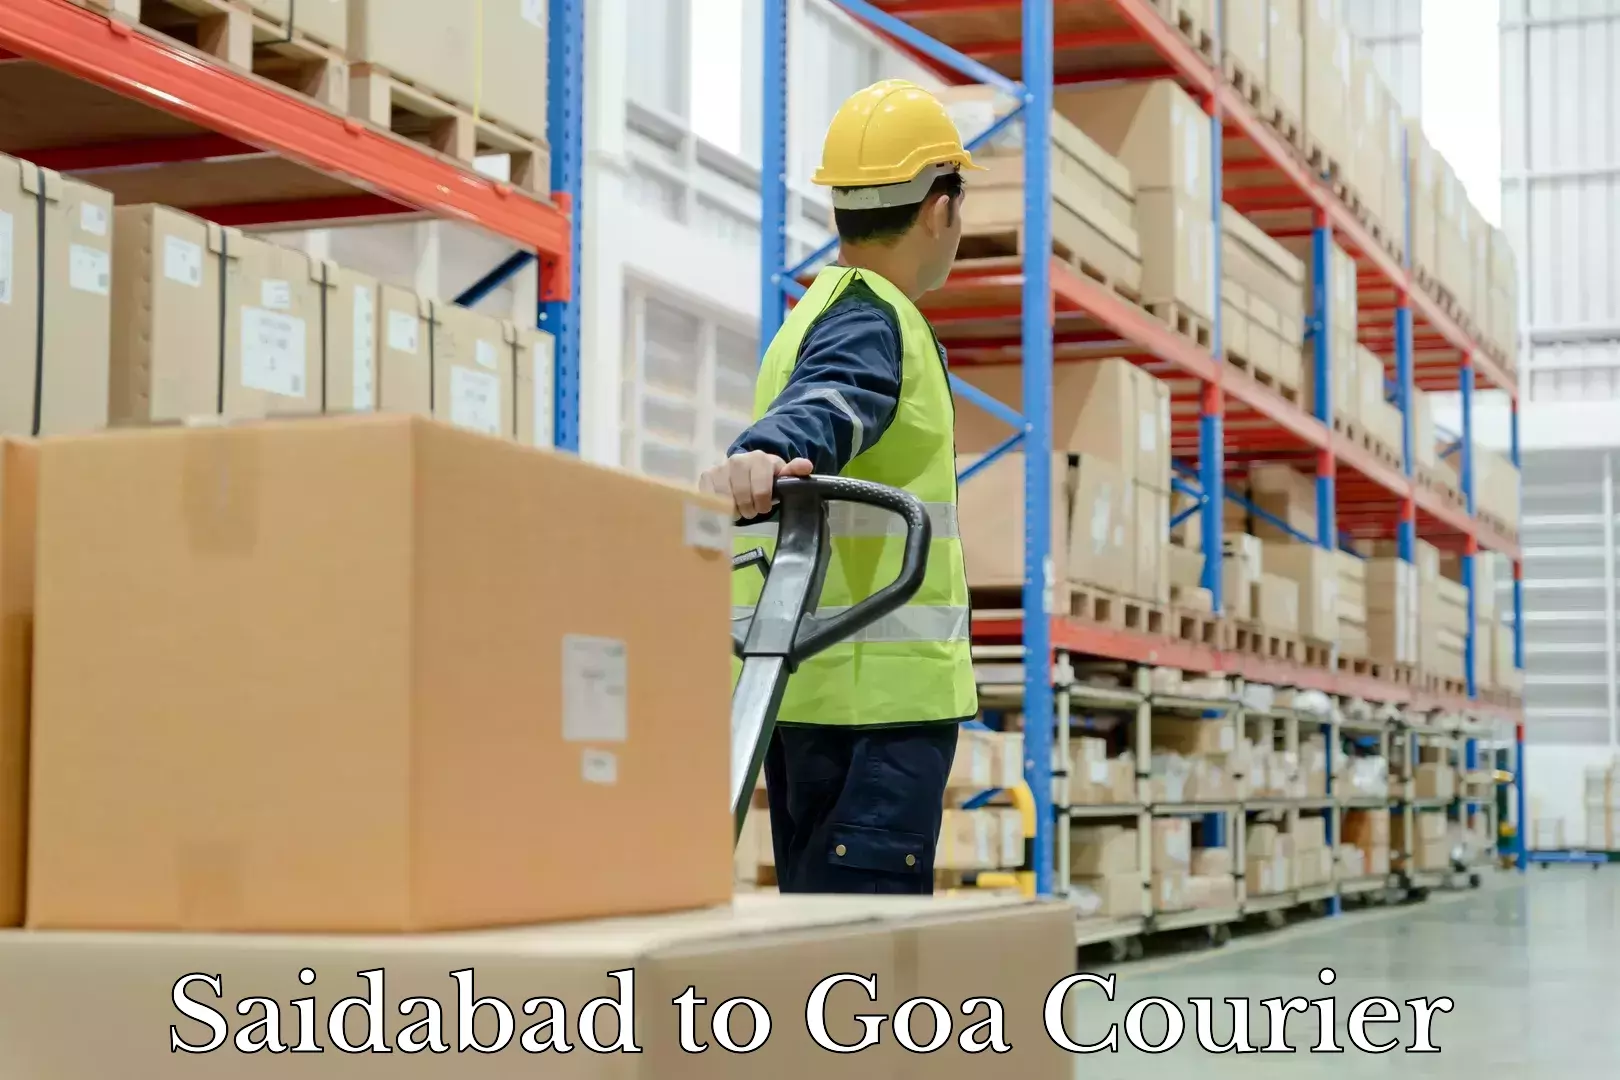 Luggage shipment specialists Saidabad to Goa University